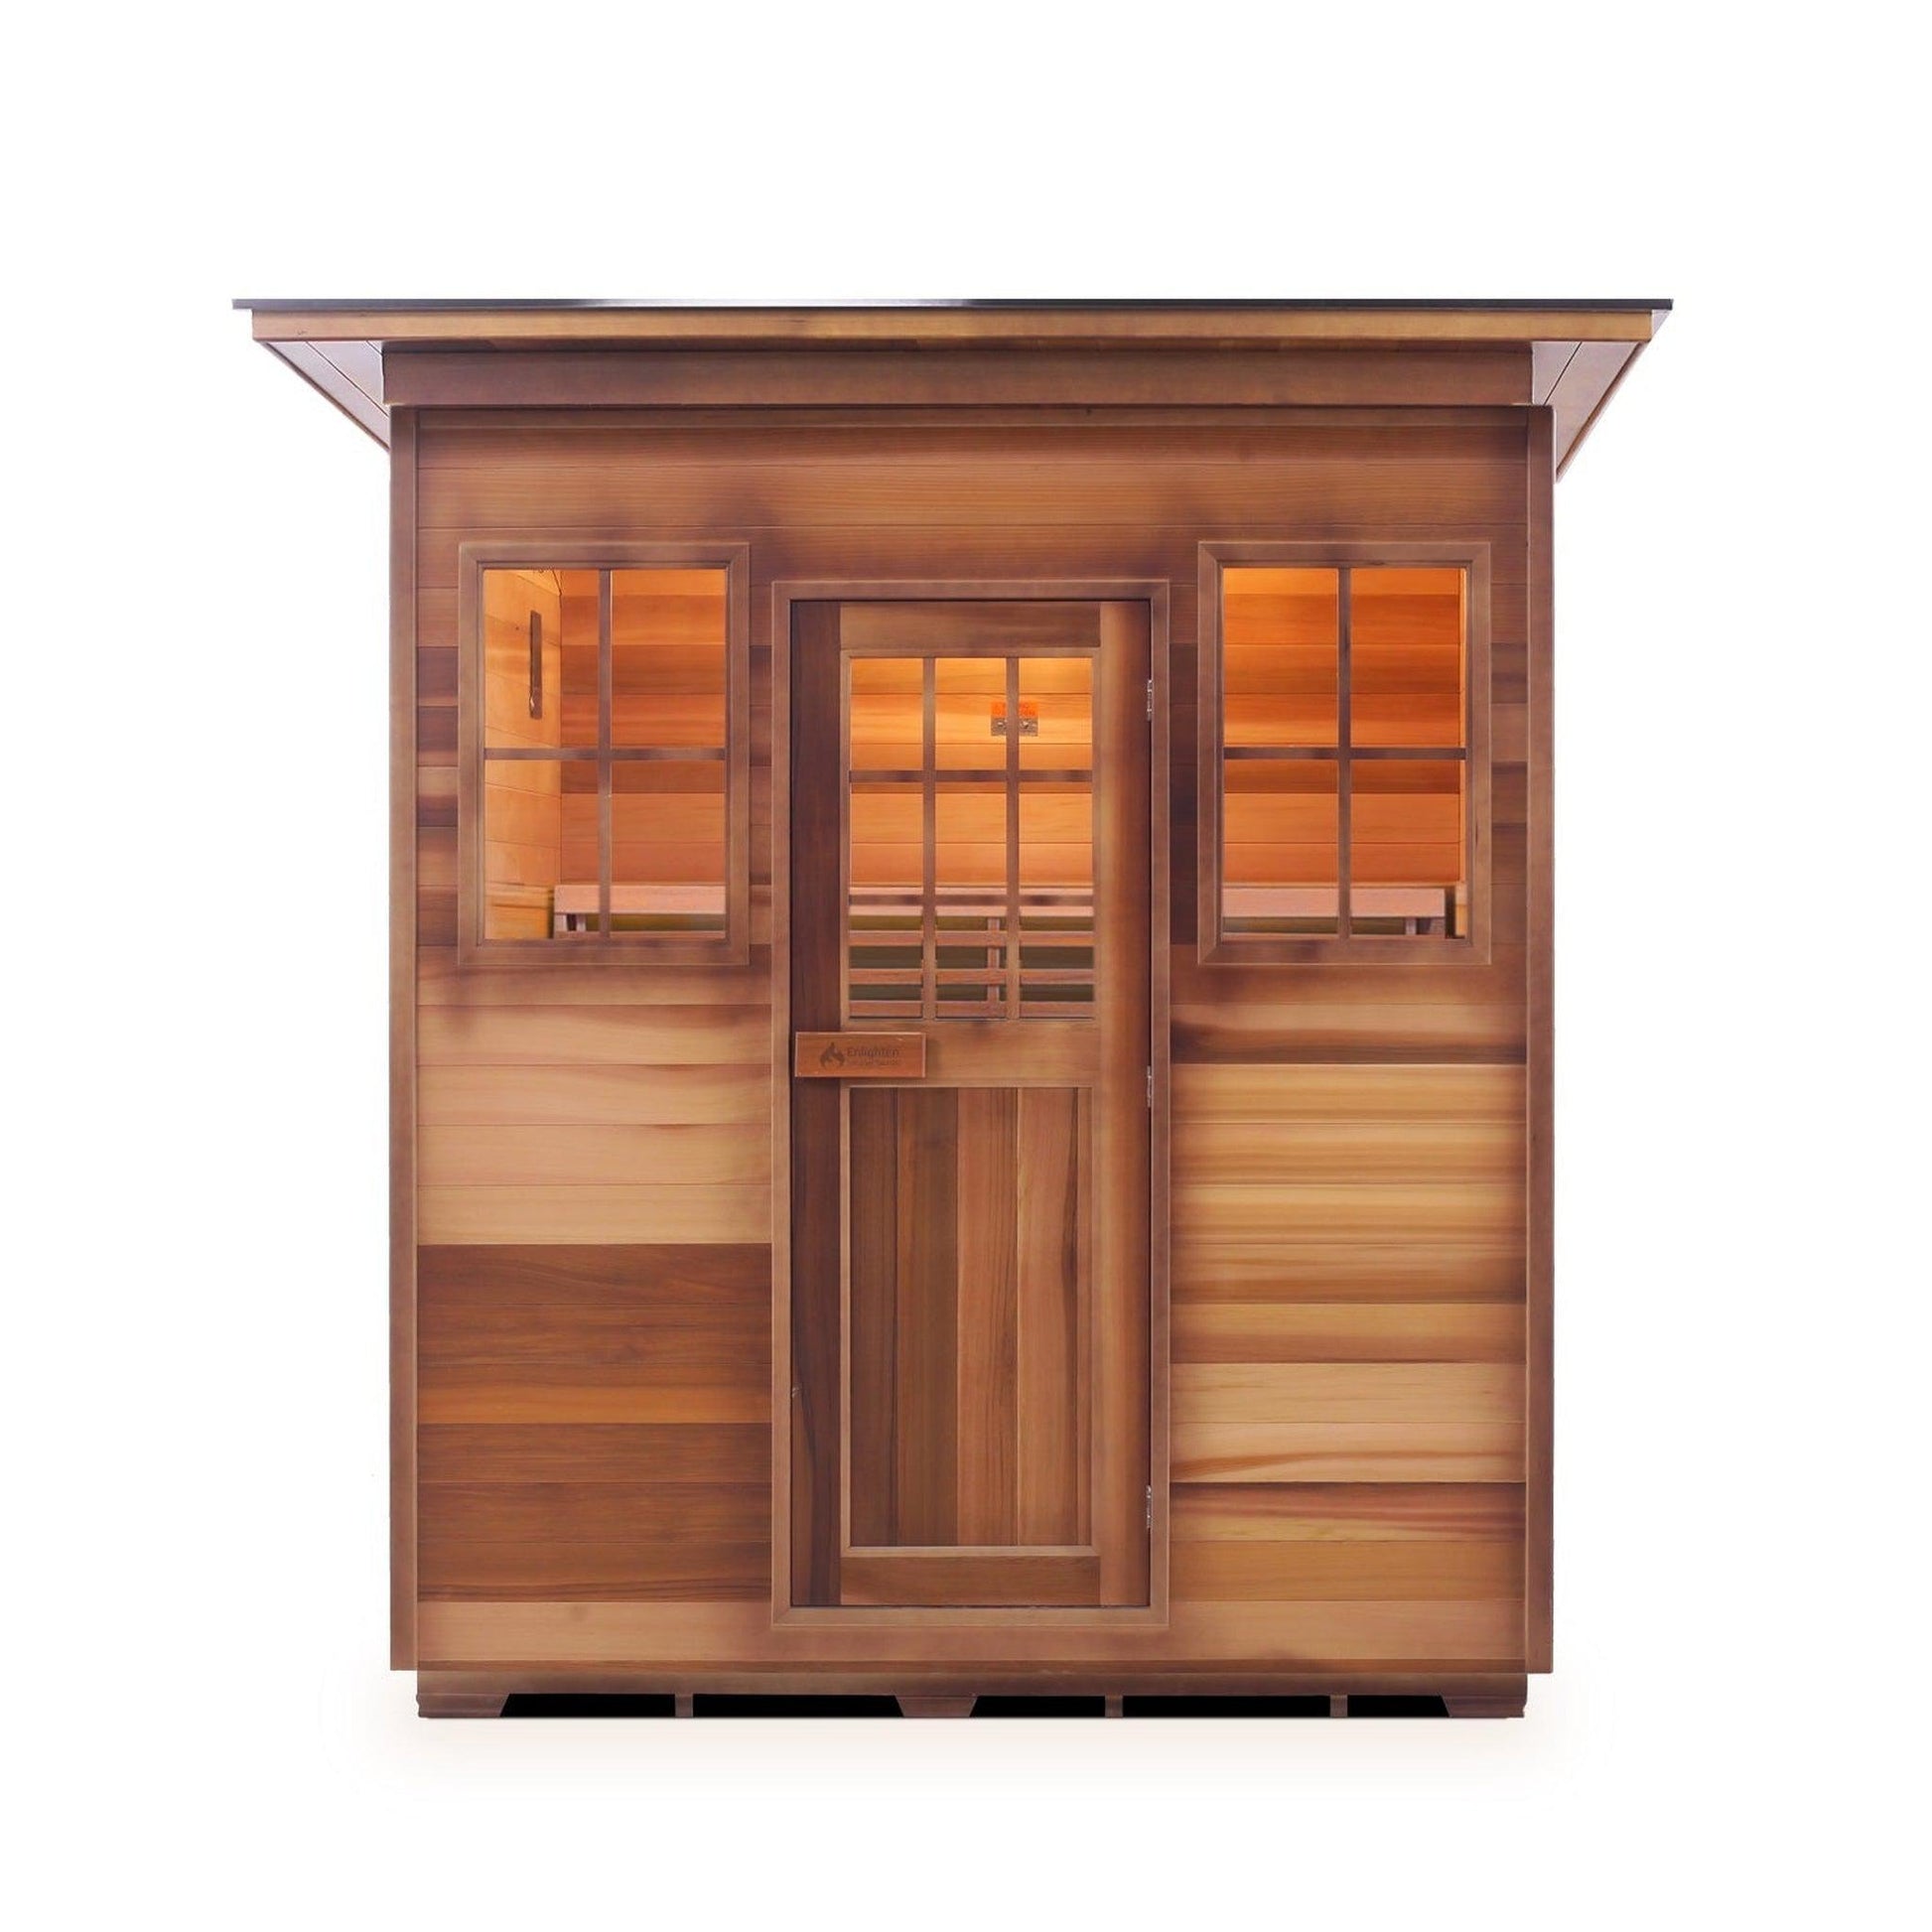 Enlighten SaunaTerra MoonLight 4-Person Slope Roof Dry Traditional Outdoor Sauna